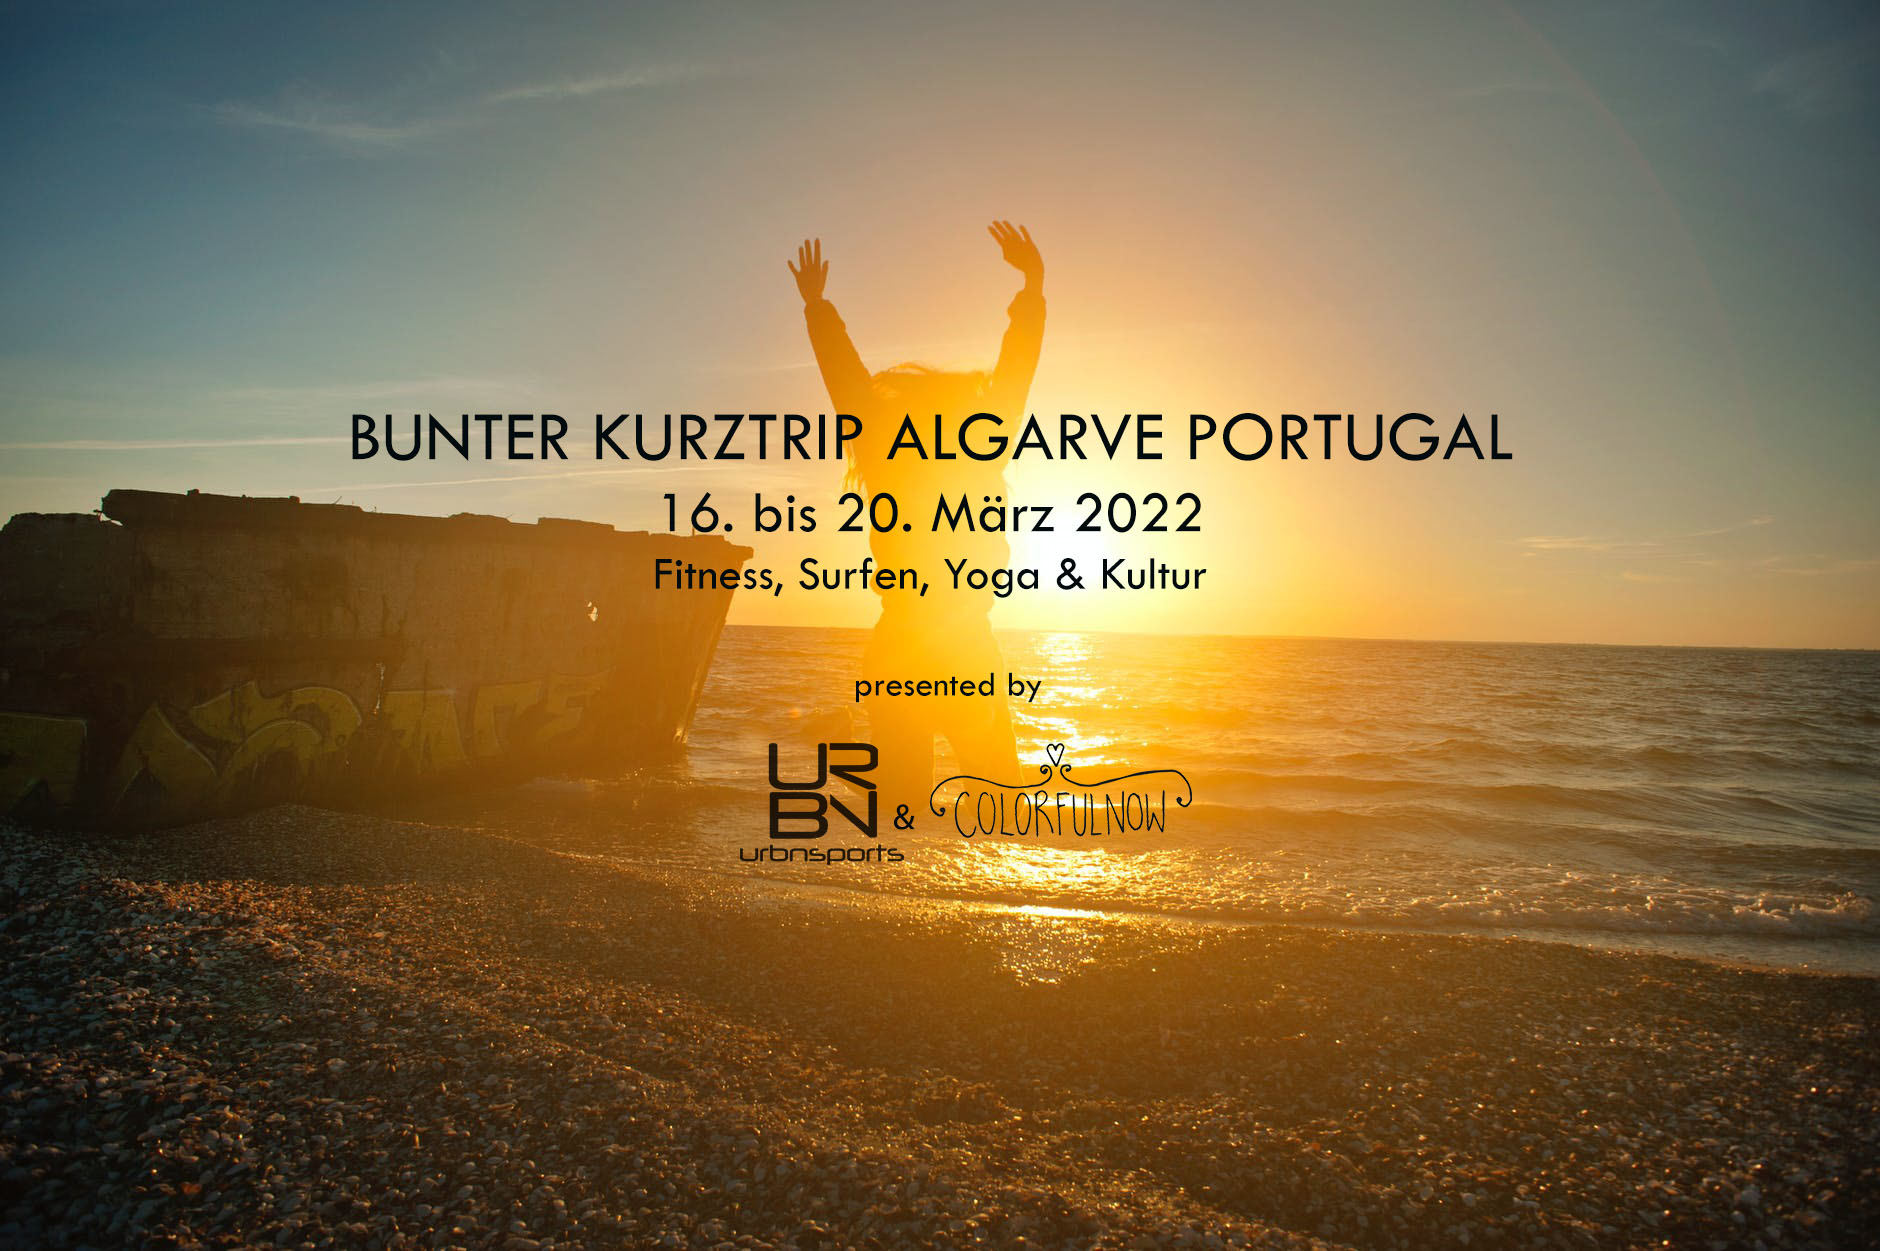 Bunter Kurztrip an die Algarve – Fitness, Yoga, Surfen & Kultur! 16. bis 20. März 2022